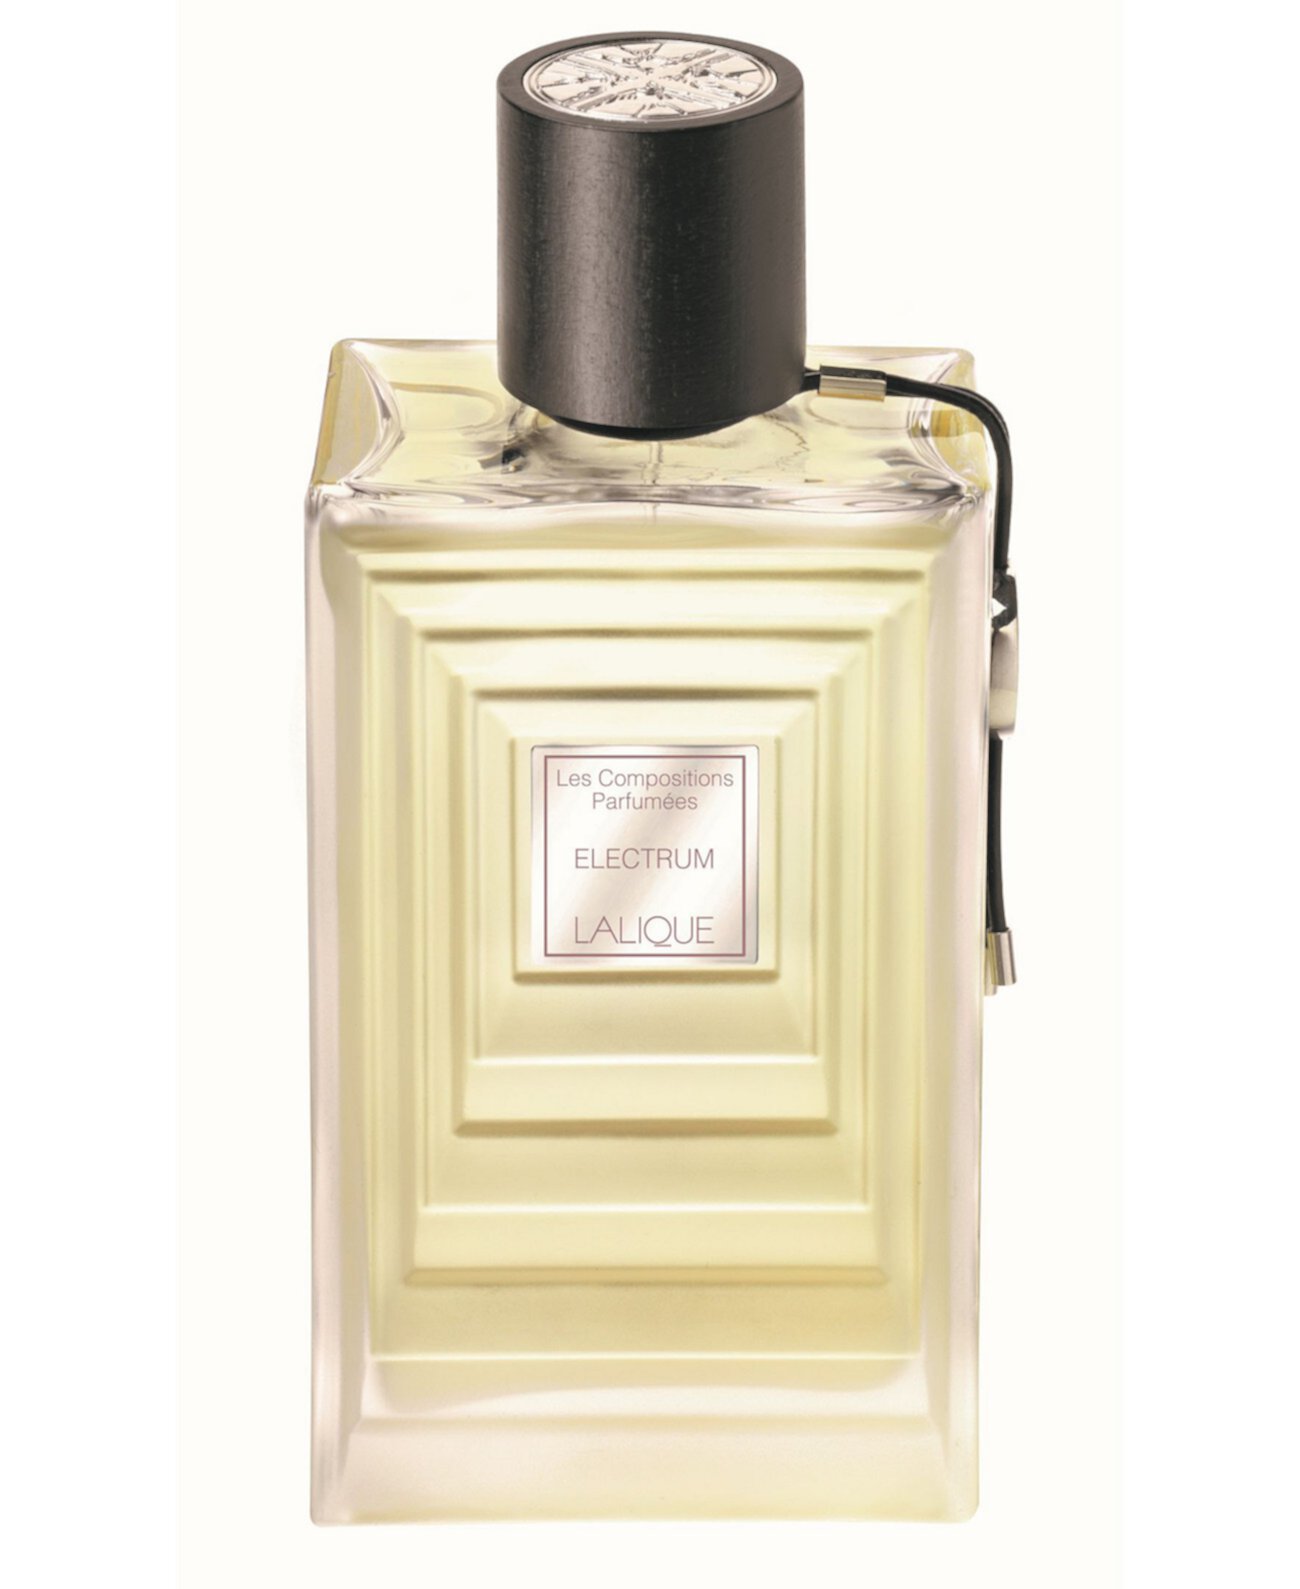 Les Compositions Perfumes Electrum Eau De Parfum Spray, 100мл Lalique